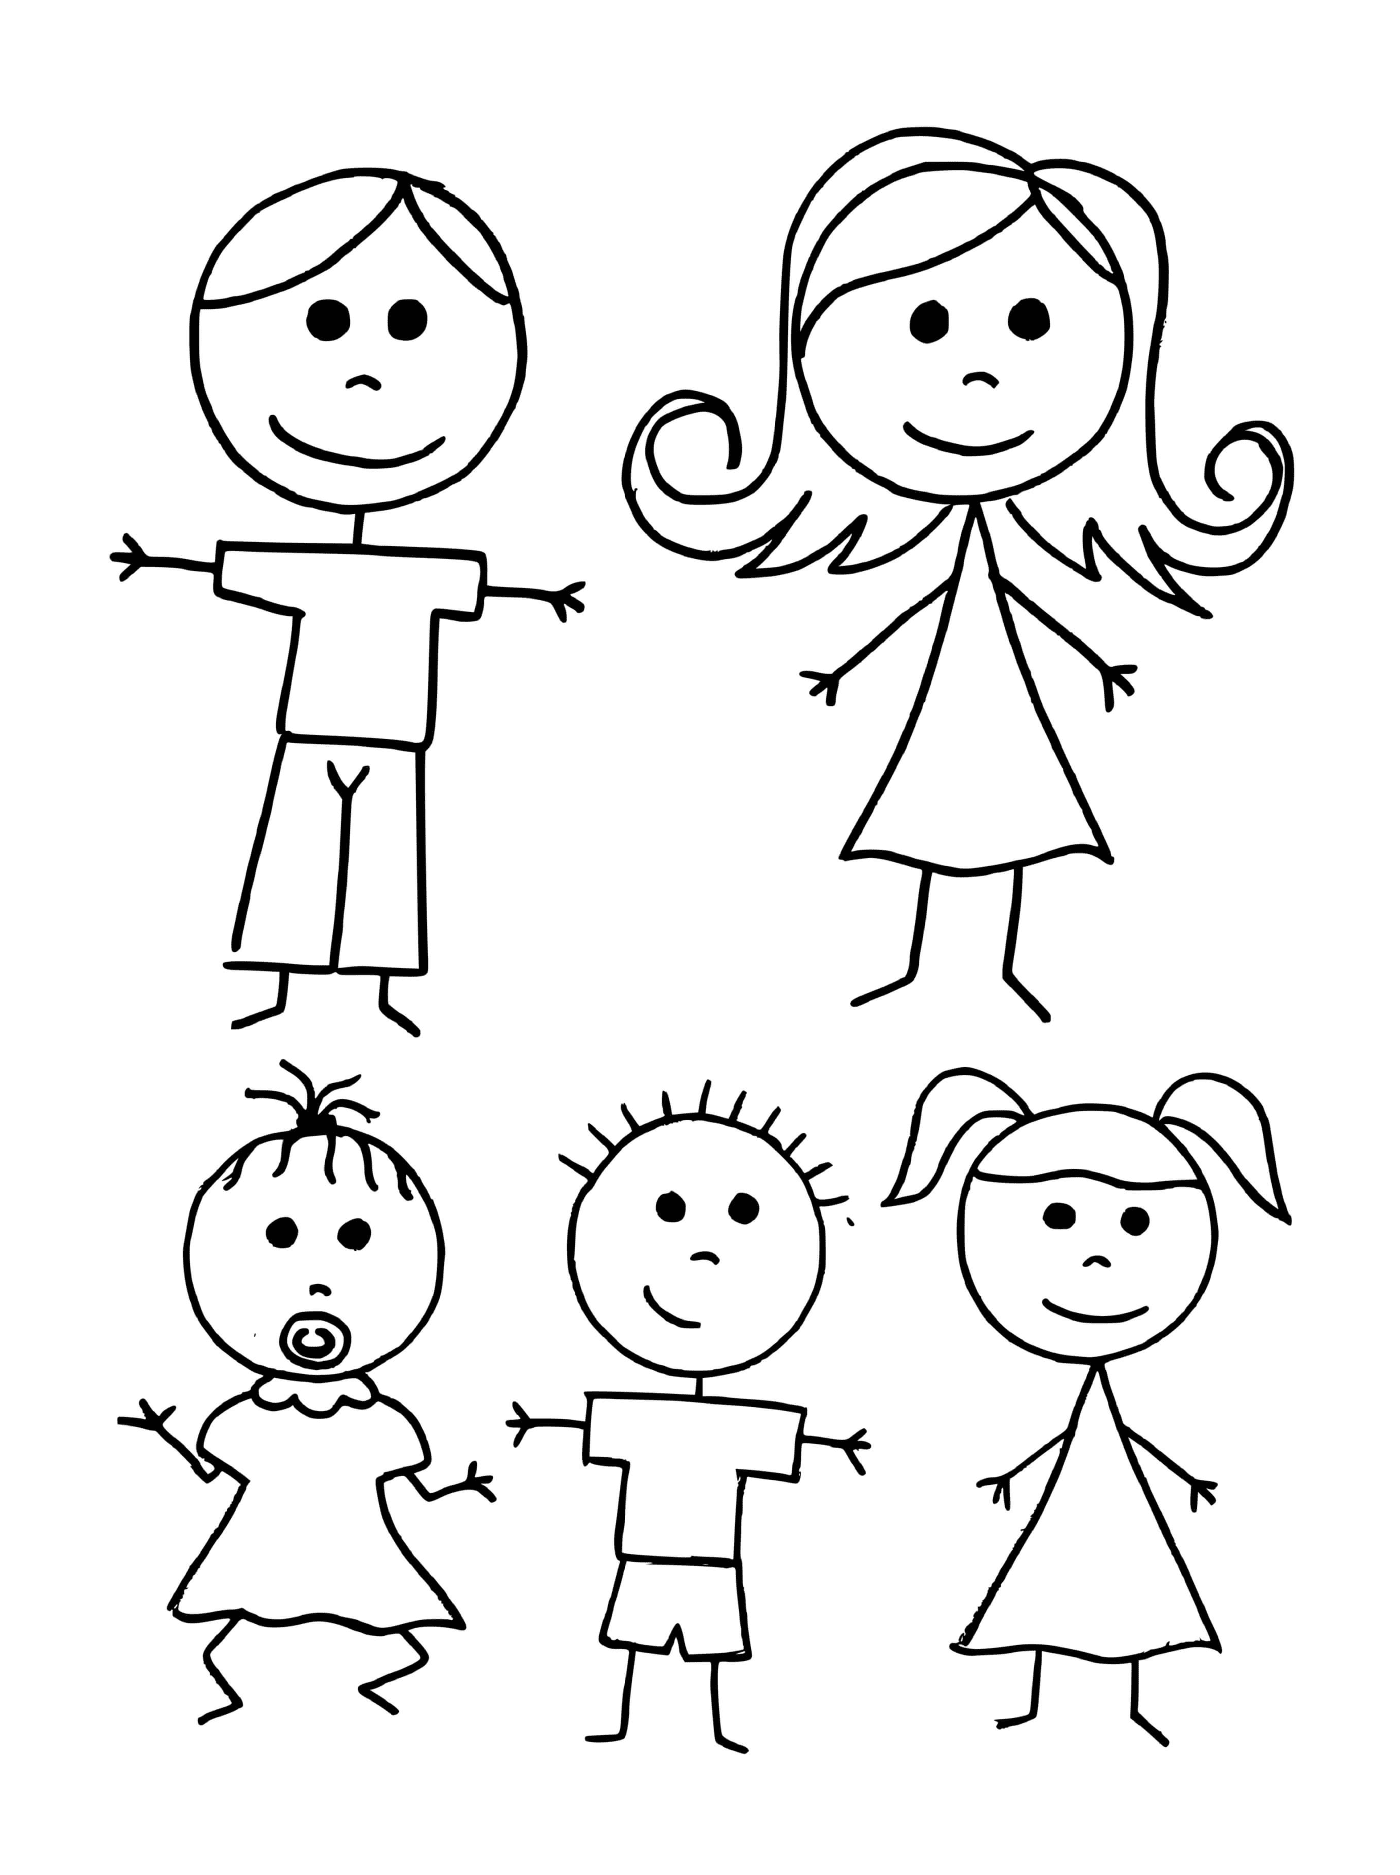  बच्चों का एक समूह जो चेहरों से घिरा हुआ है 